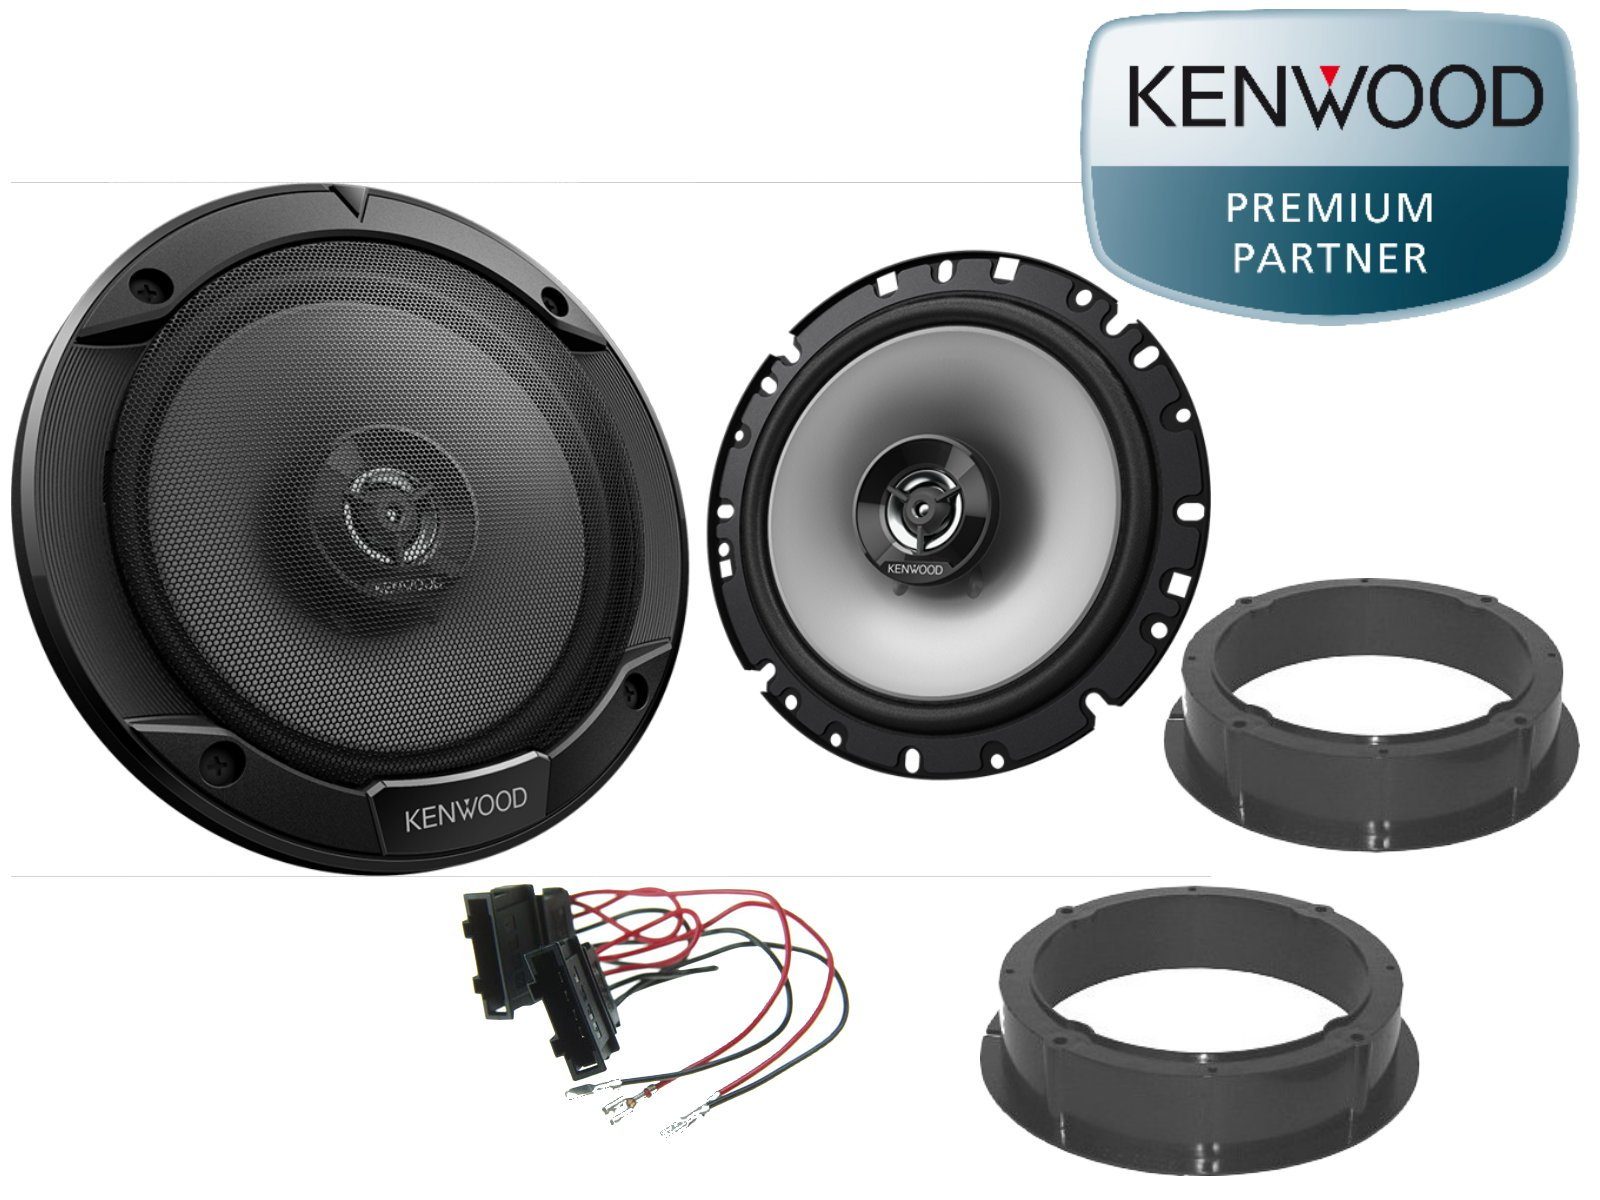 DSX Kenwood passend für Skoda Octavia 97-04 Lautsprech Auto-Lautsprecher (30 W) anthrazit